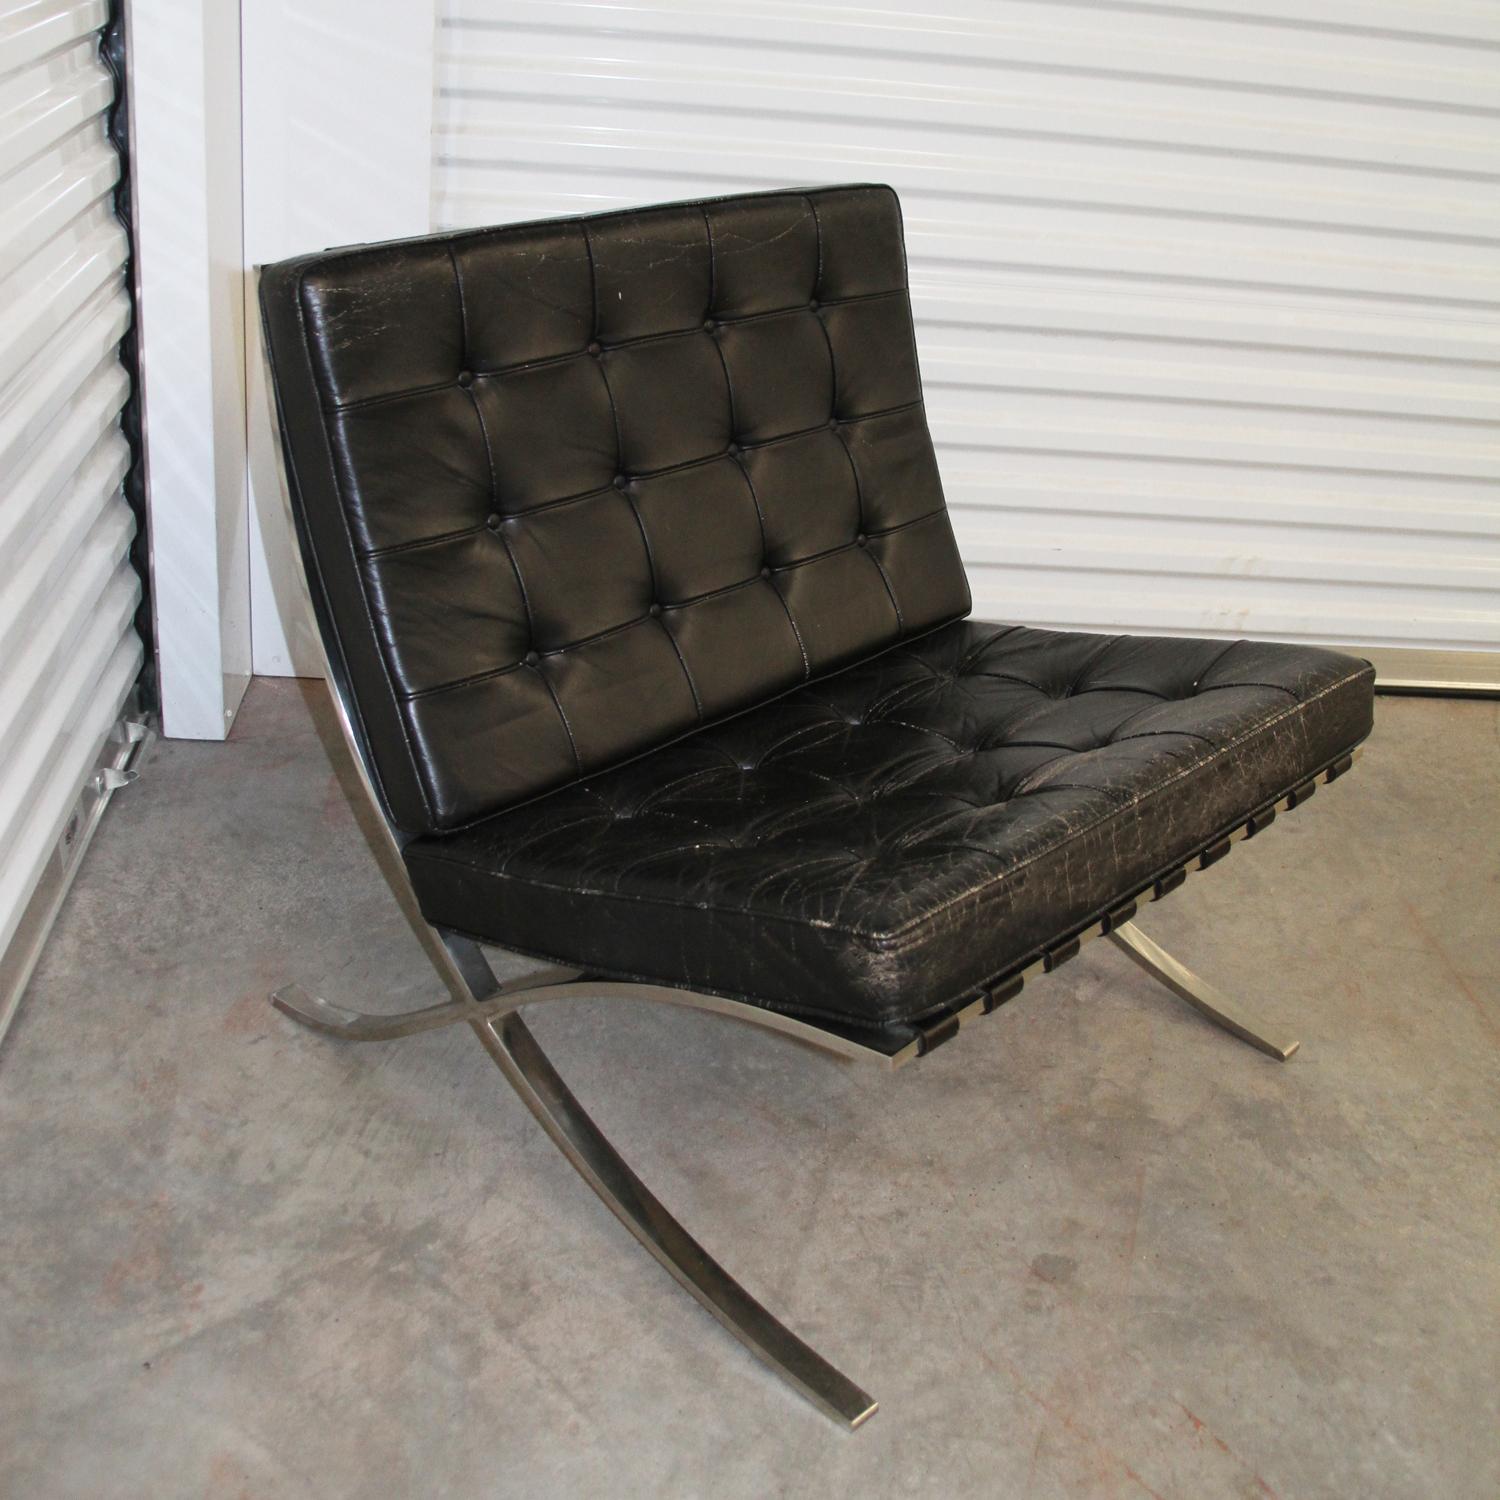 Satz von 4 Knoll Mies Van der Rhoe Barcelona Stühlen.
 

Der ikonische Barcelona-Sessel von Ludwig Mies van der Rohe für Knoll International. Verchromtes Stahlgestell und Originalpolster aus schwarzem Leder. Unterzeichnet mit dem Label des